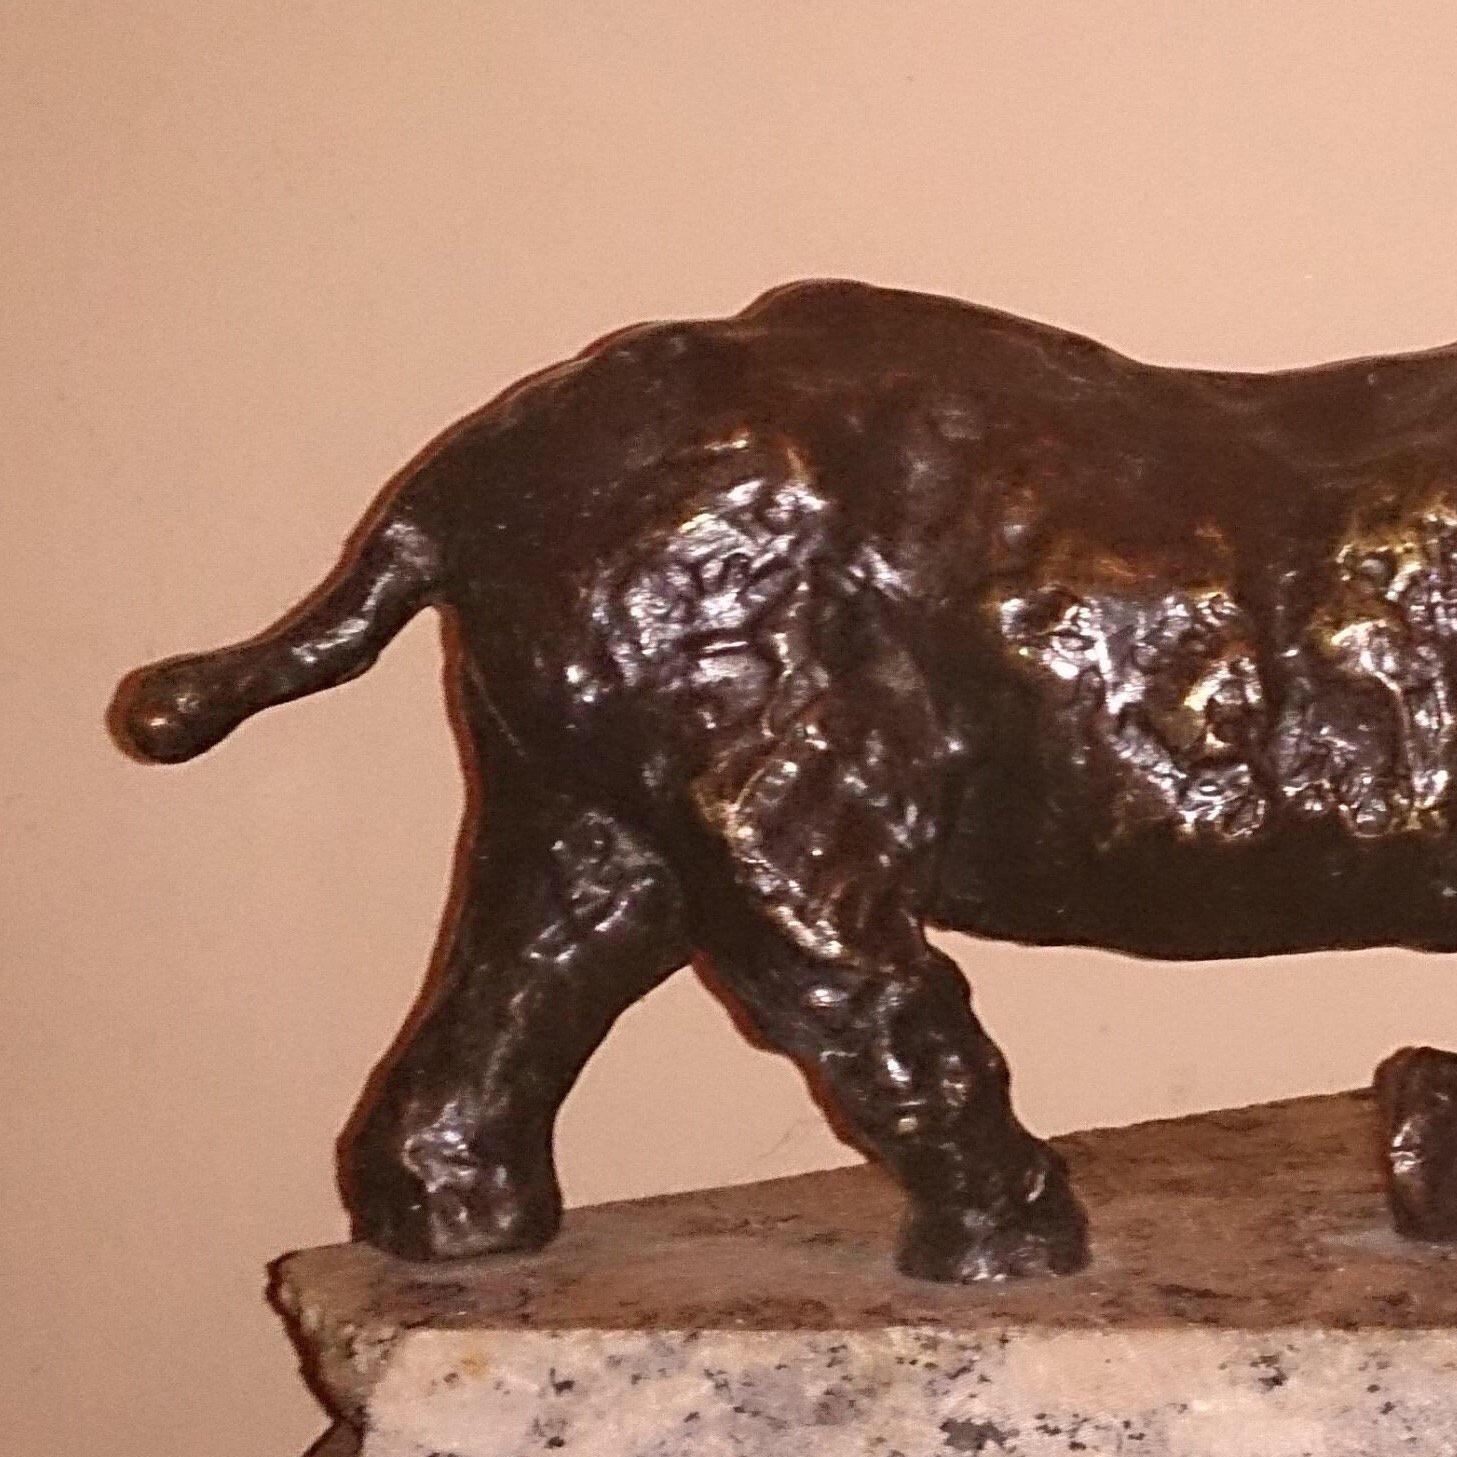 Polnische modernistische expressionistische Rhinoceros-Skulptur aus Rhino Bronze – Sculpture von Dominik Albinski